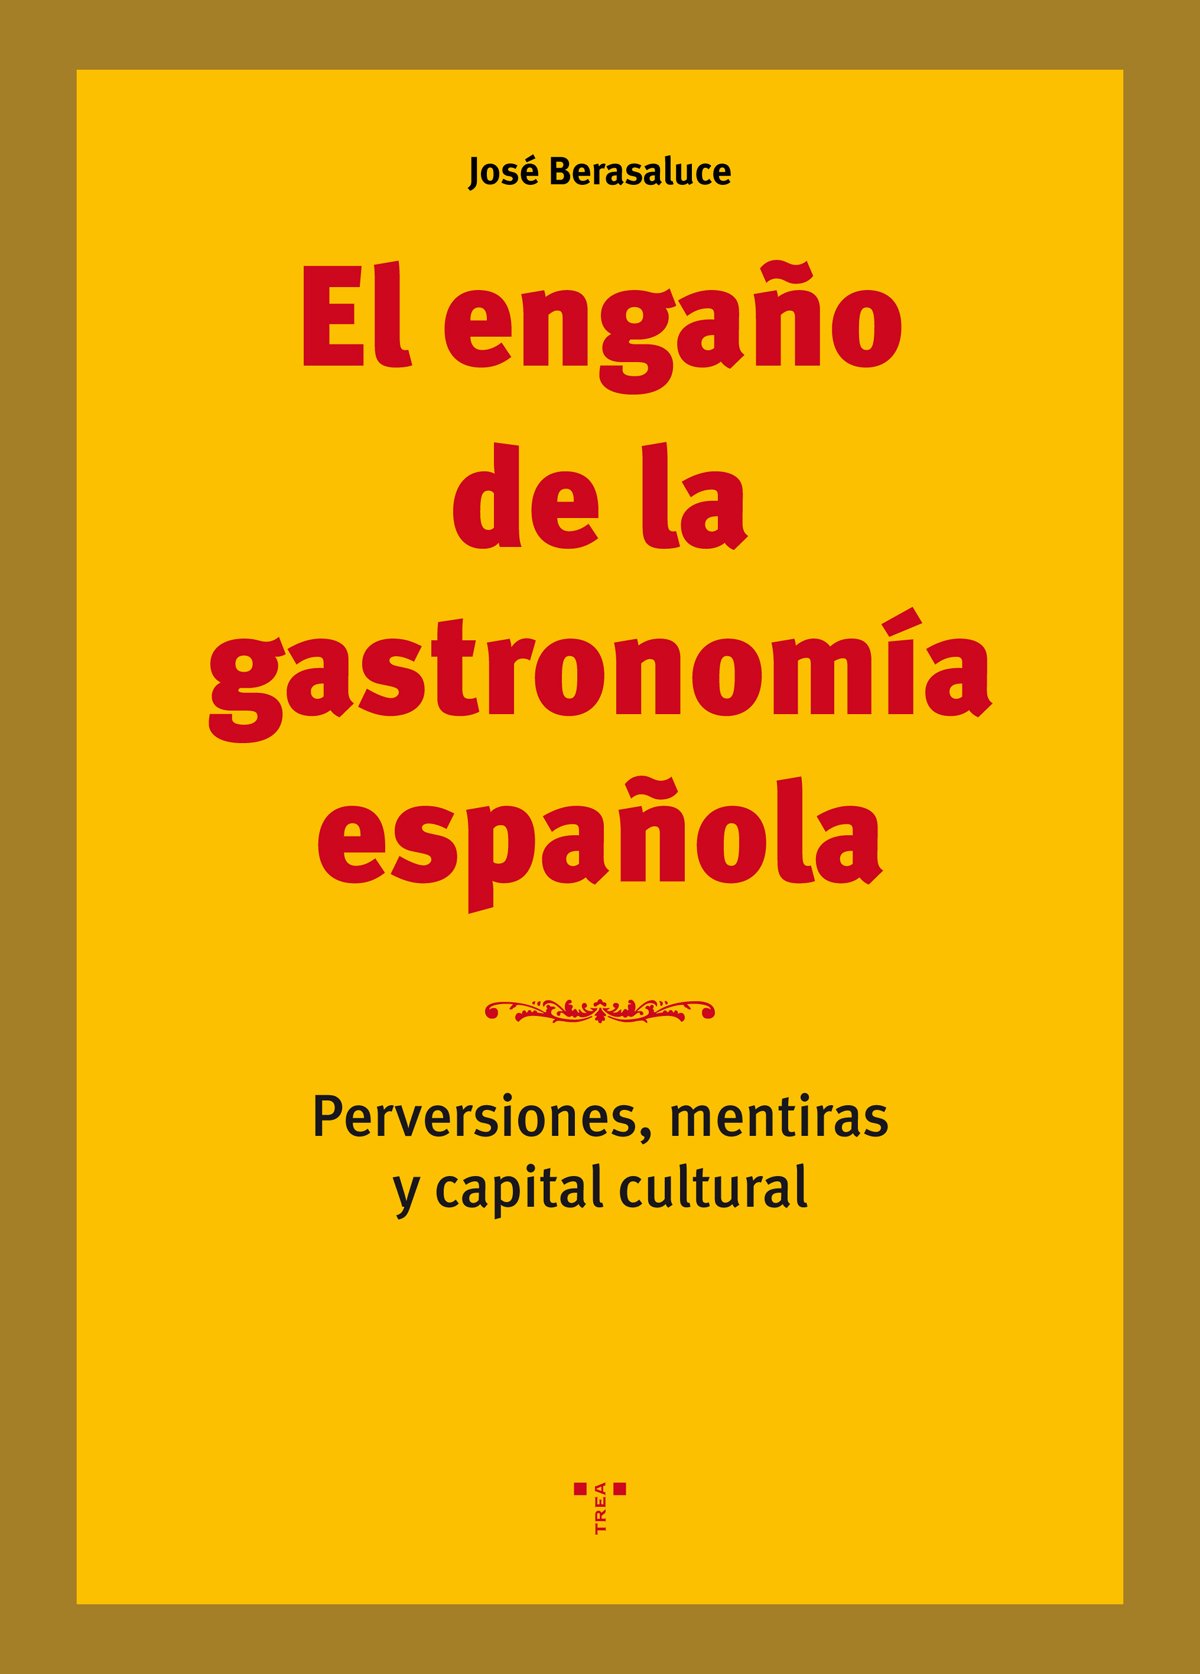 JOSÉ BERASALUCE. El engaño de la gastronomía española (Ediciones Trea)